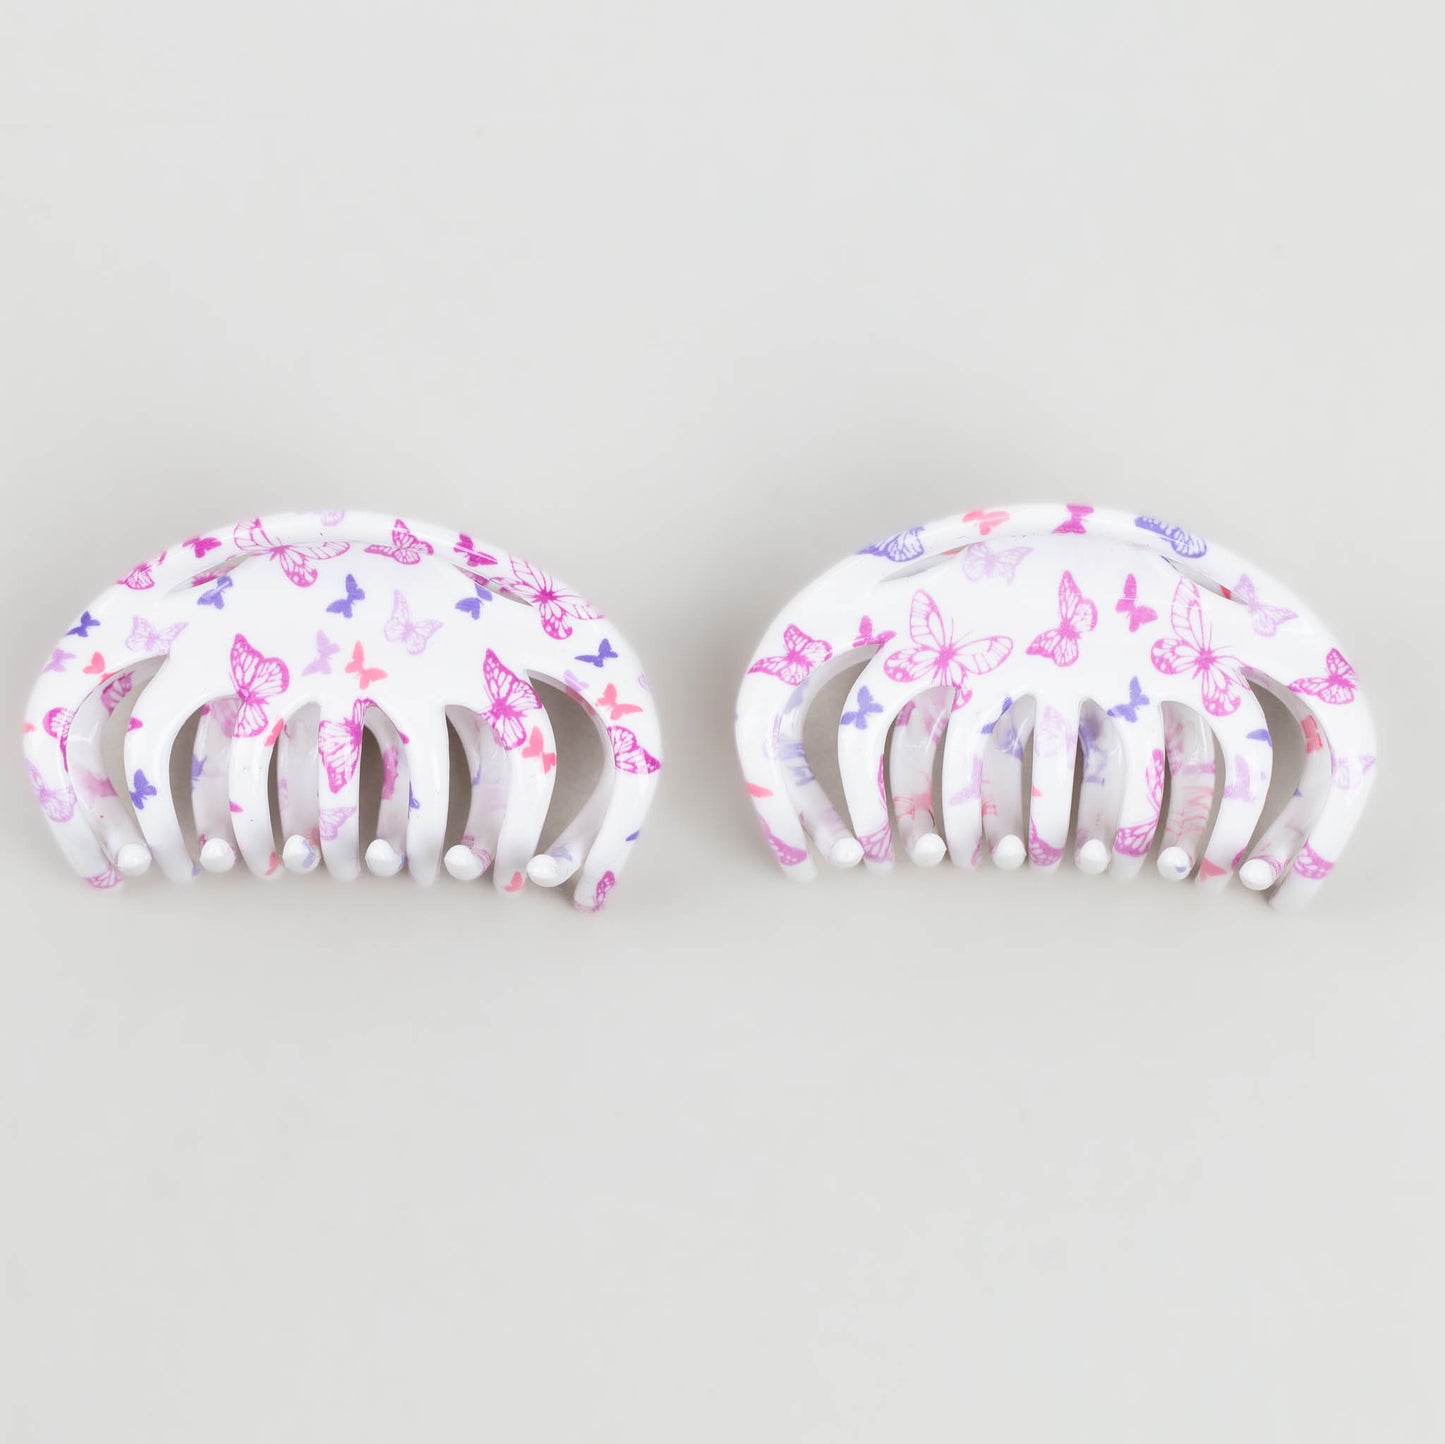 Clame de păr mari în stil octopus cu imprimeu fluturi și textură lucioasă, set 2 buc - Alb, Roz